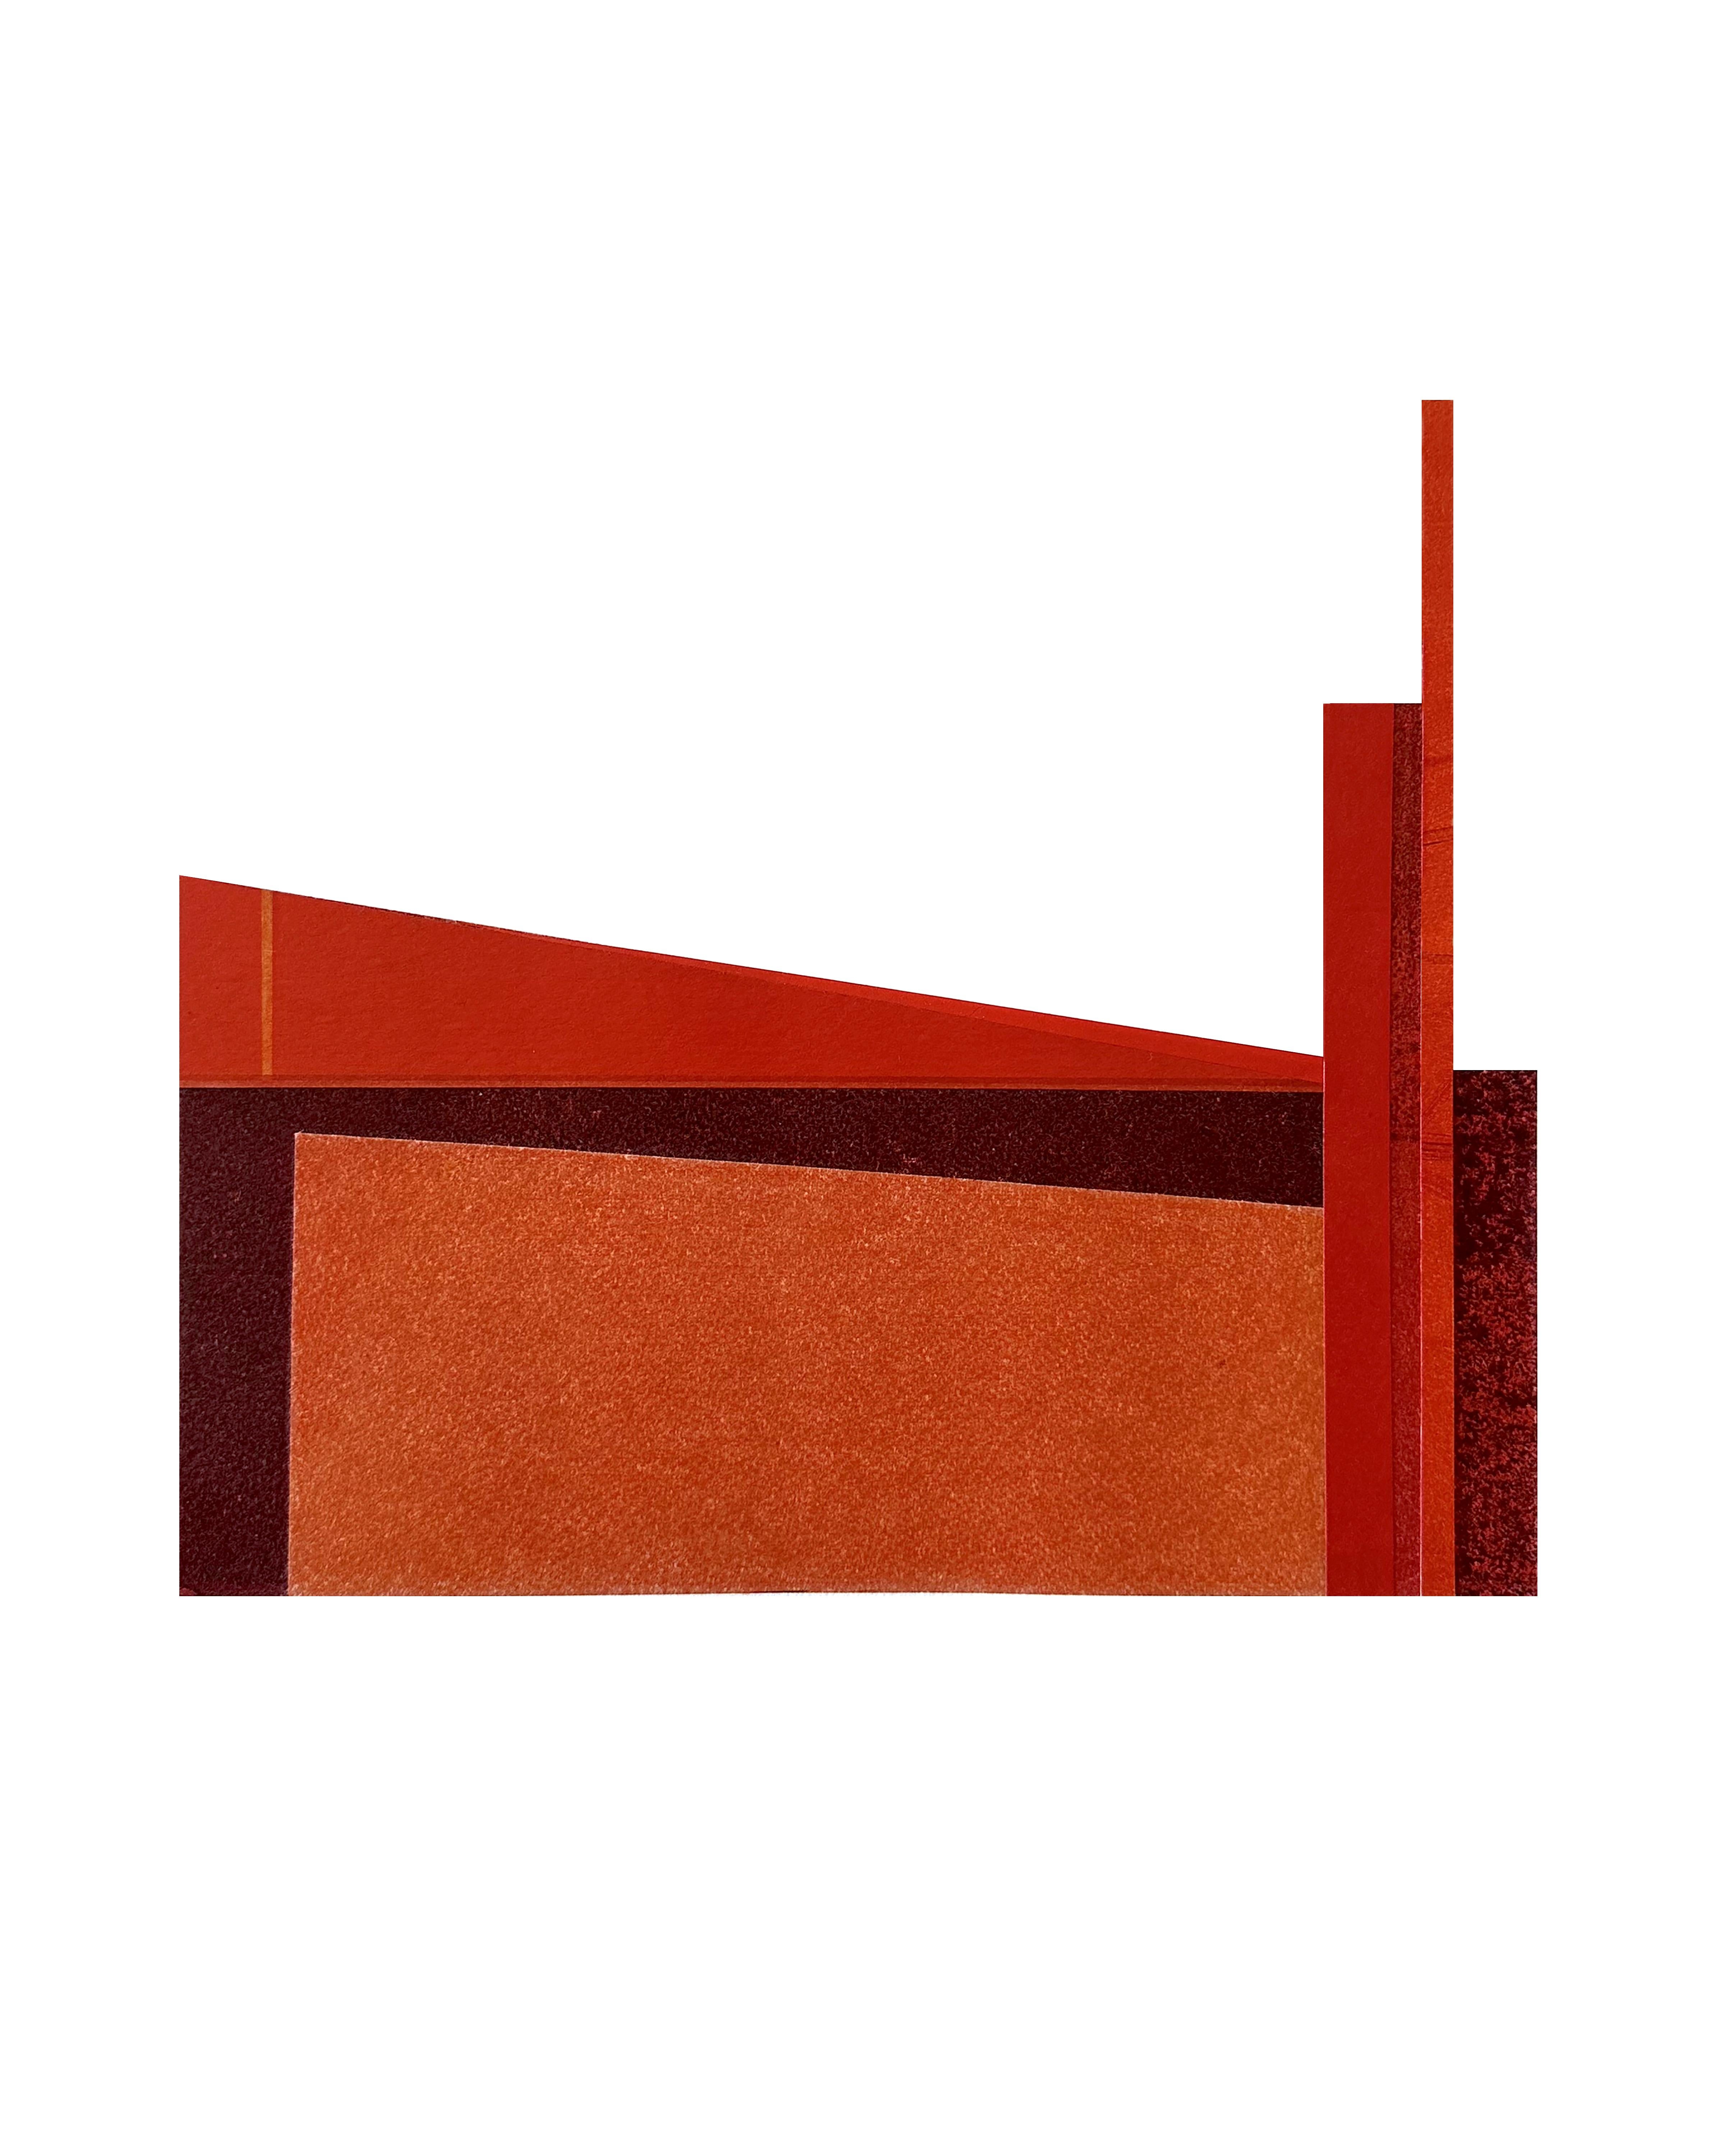 Abstract Print Agathe Bouton - Factory XII : collage architectural urbain moderniste sur monoimpression en rouge, non encadré